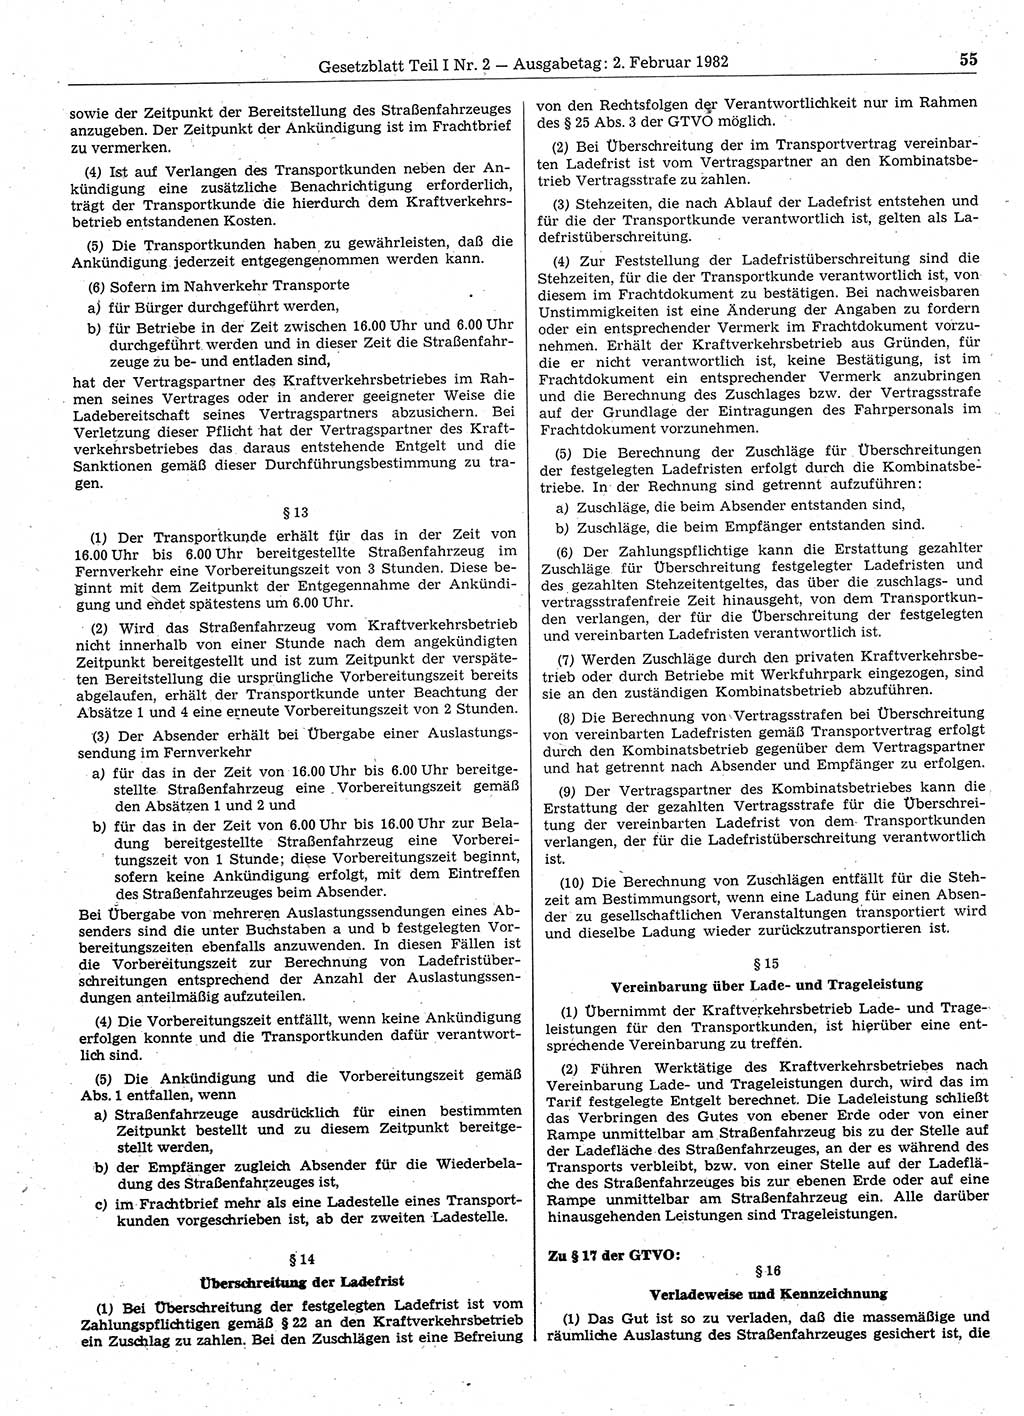 Gesetzblatt (GBl.) der Deutschen Demokratischen Republik (DDR) Teil Ⅰ 1982, Seite 55 (GBl. DDR Ⅰ 1982, S. 55)